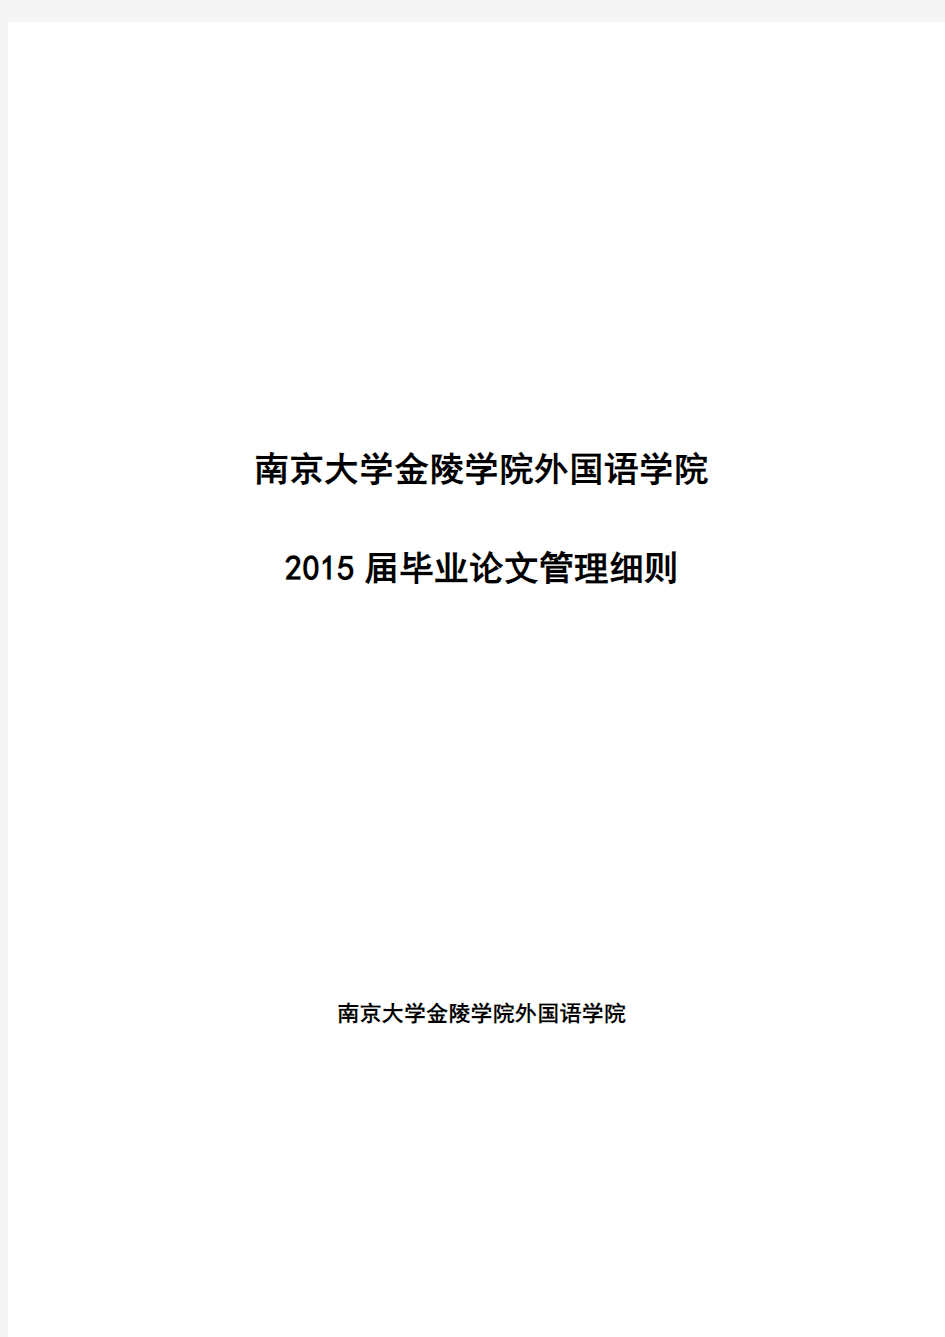 南京大学金陵学院外国语学院2015届毕业论文管理细则及德语管理要求(草稿)